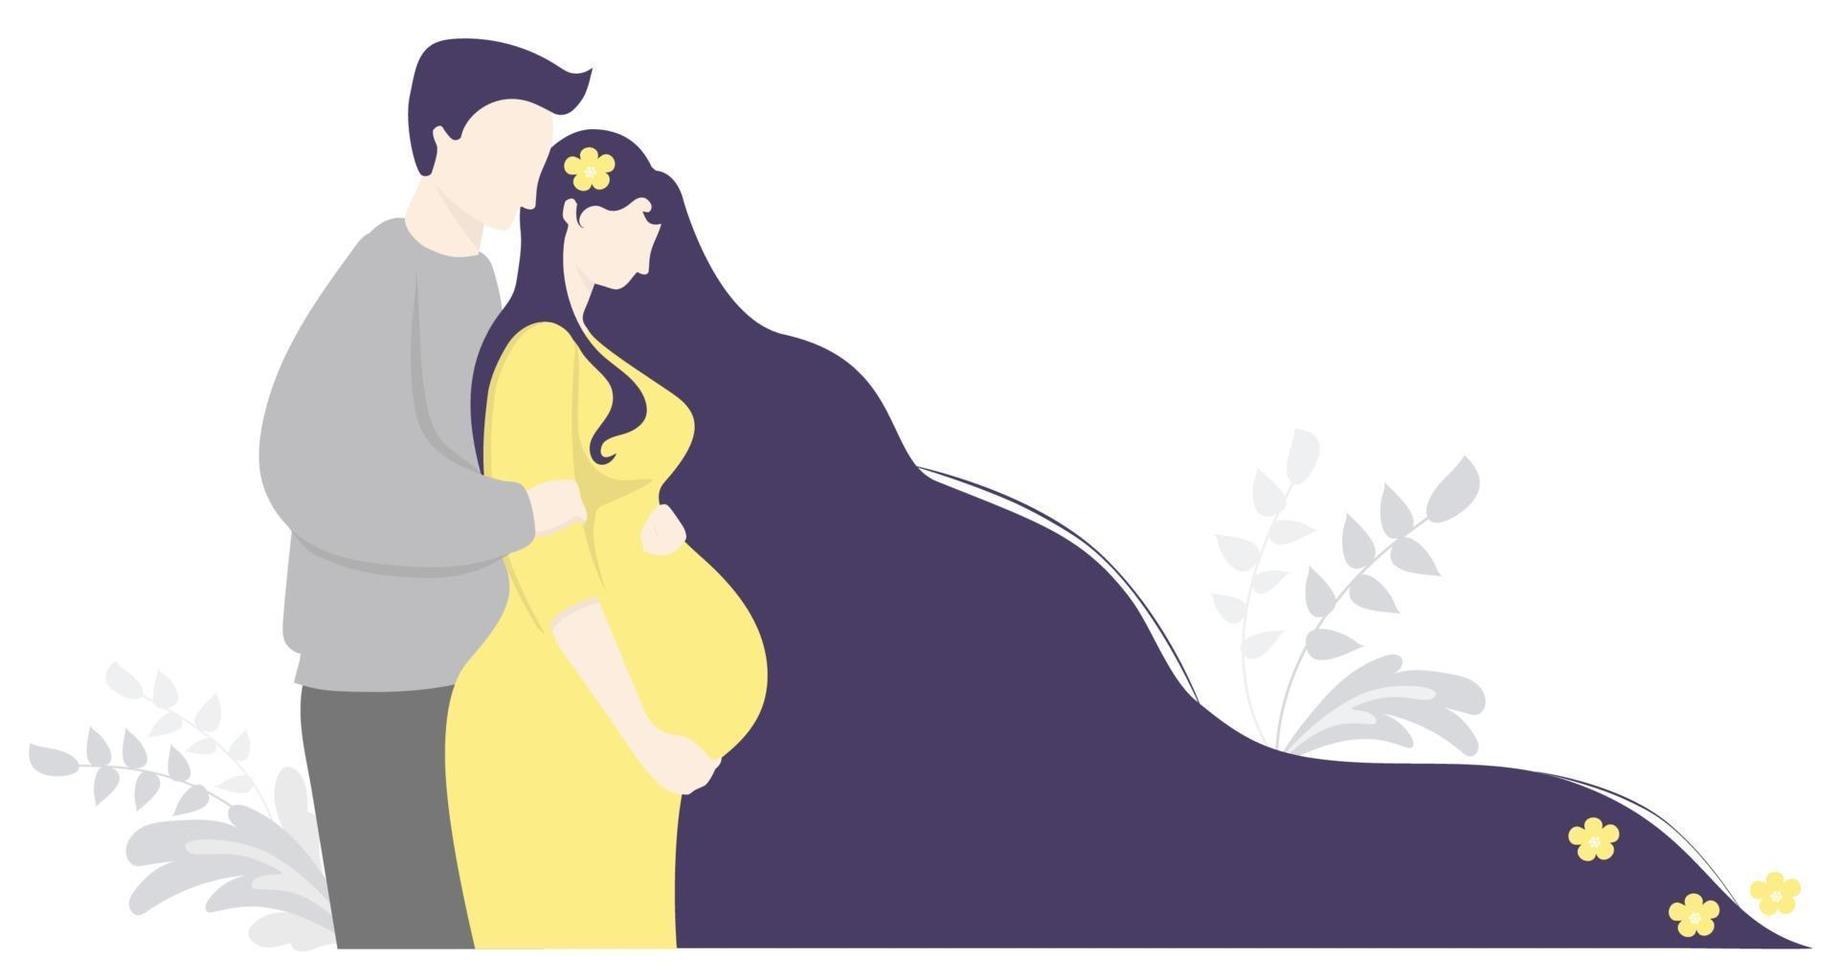 moederschap en gezin. gelukkige zwangere vrouw met bloemen in lang haar in een gele jurk knuffels buik. een man staat naast haar en omhelst haar zachtjes. vector illustratie. schattige decoratieve horizontale banner